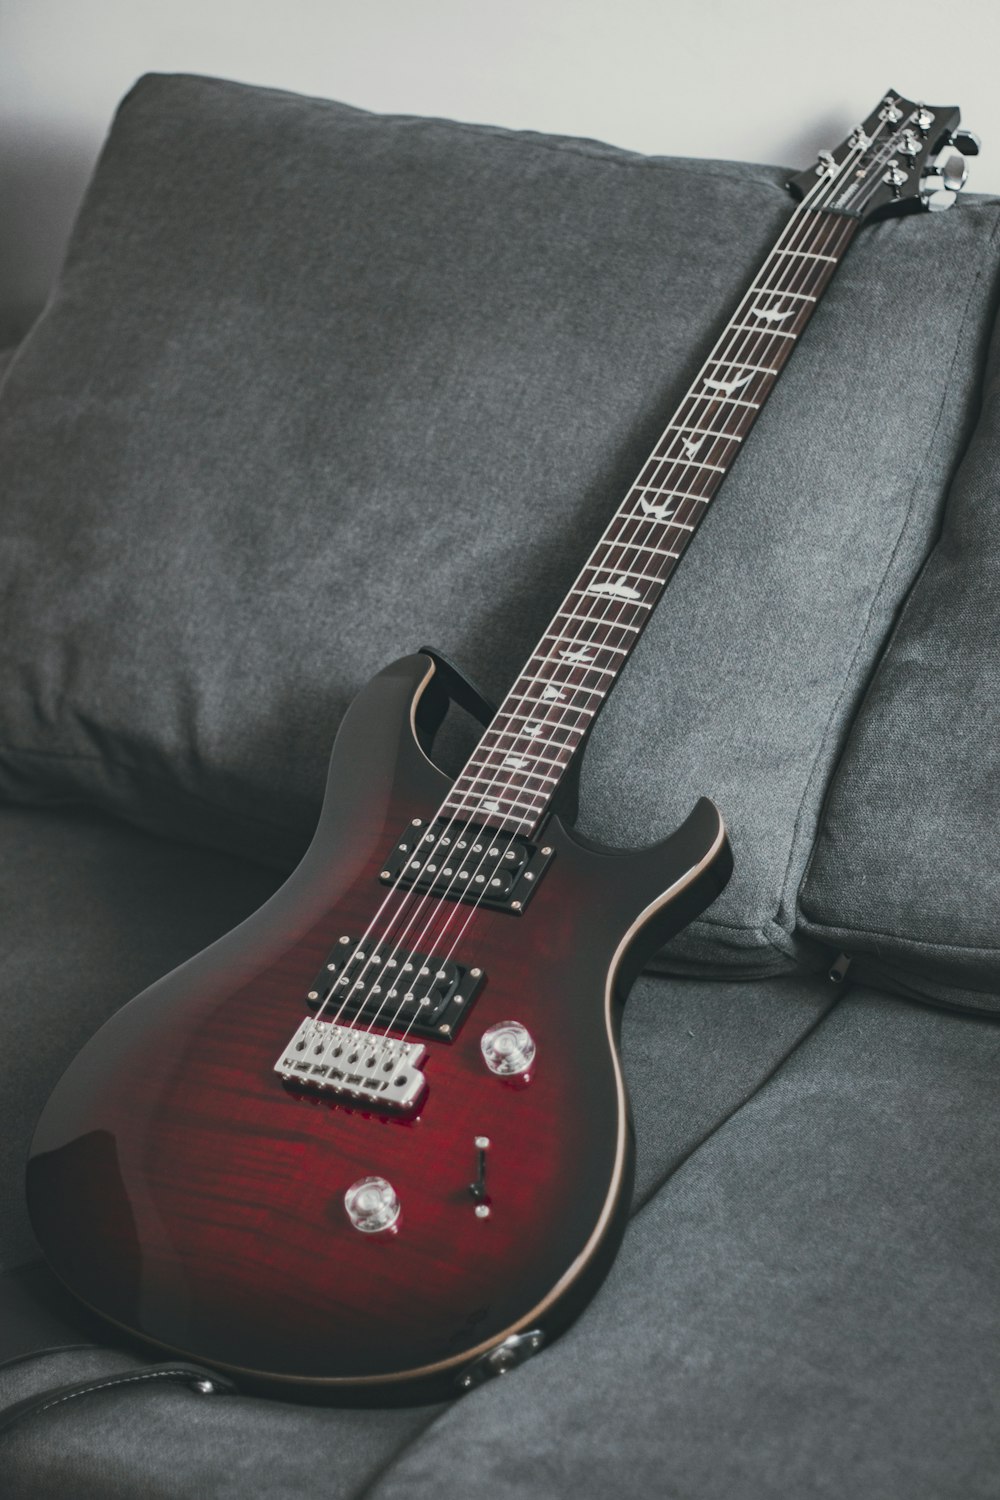 chitarra elettrica rossa e bianca su tessuto nero